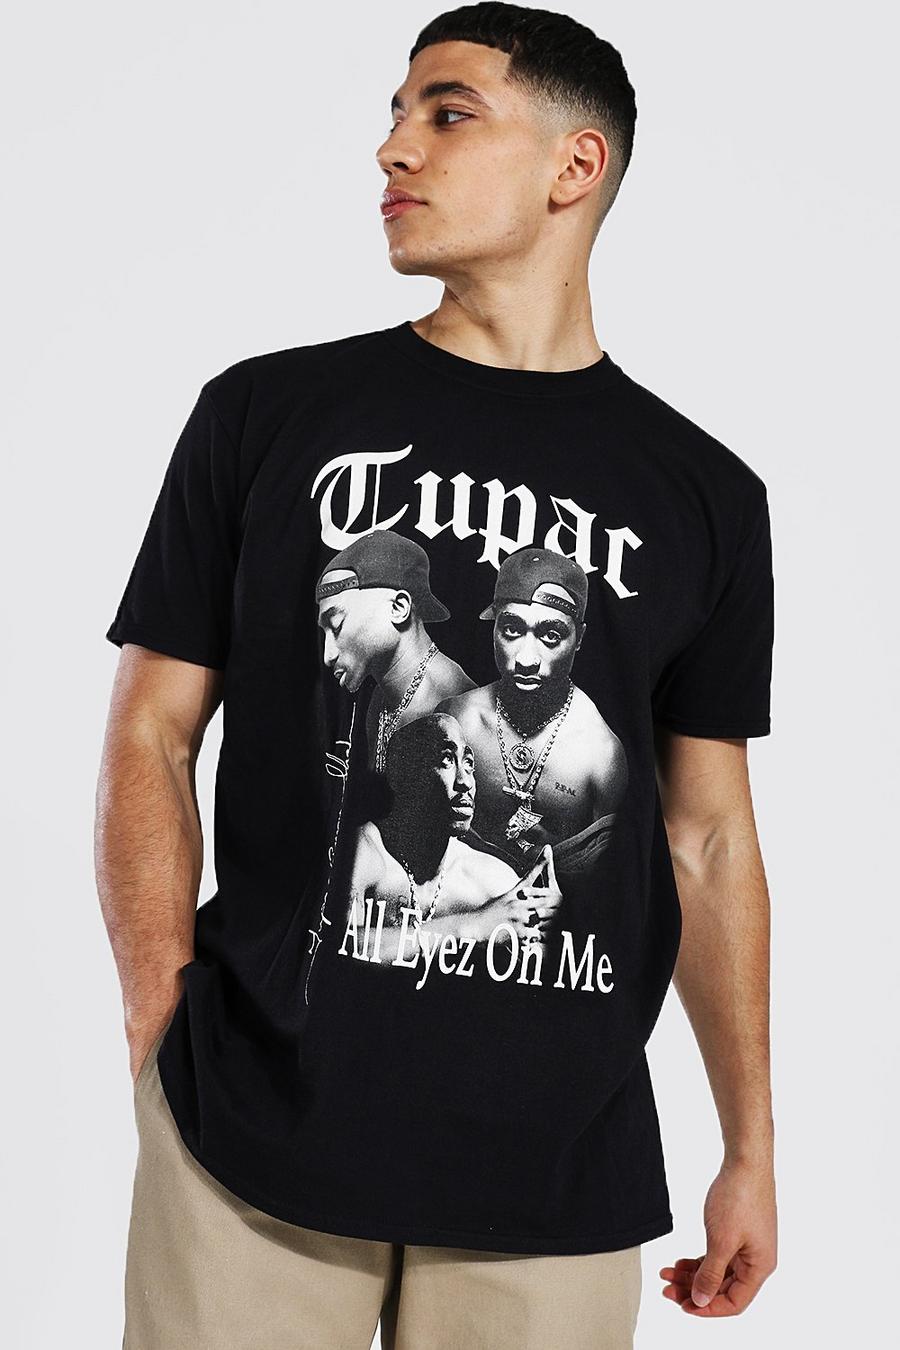 שחור negro טישרט אוברסייז ממותג עם הדפס הומאז' Tupac